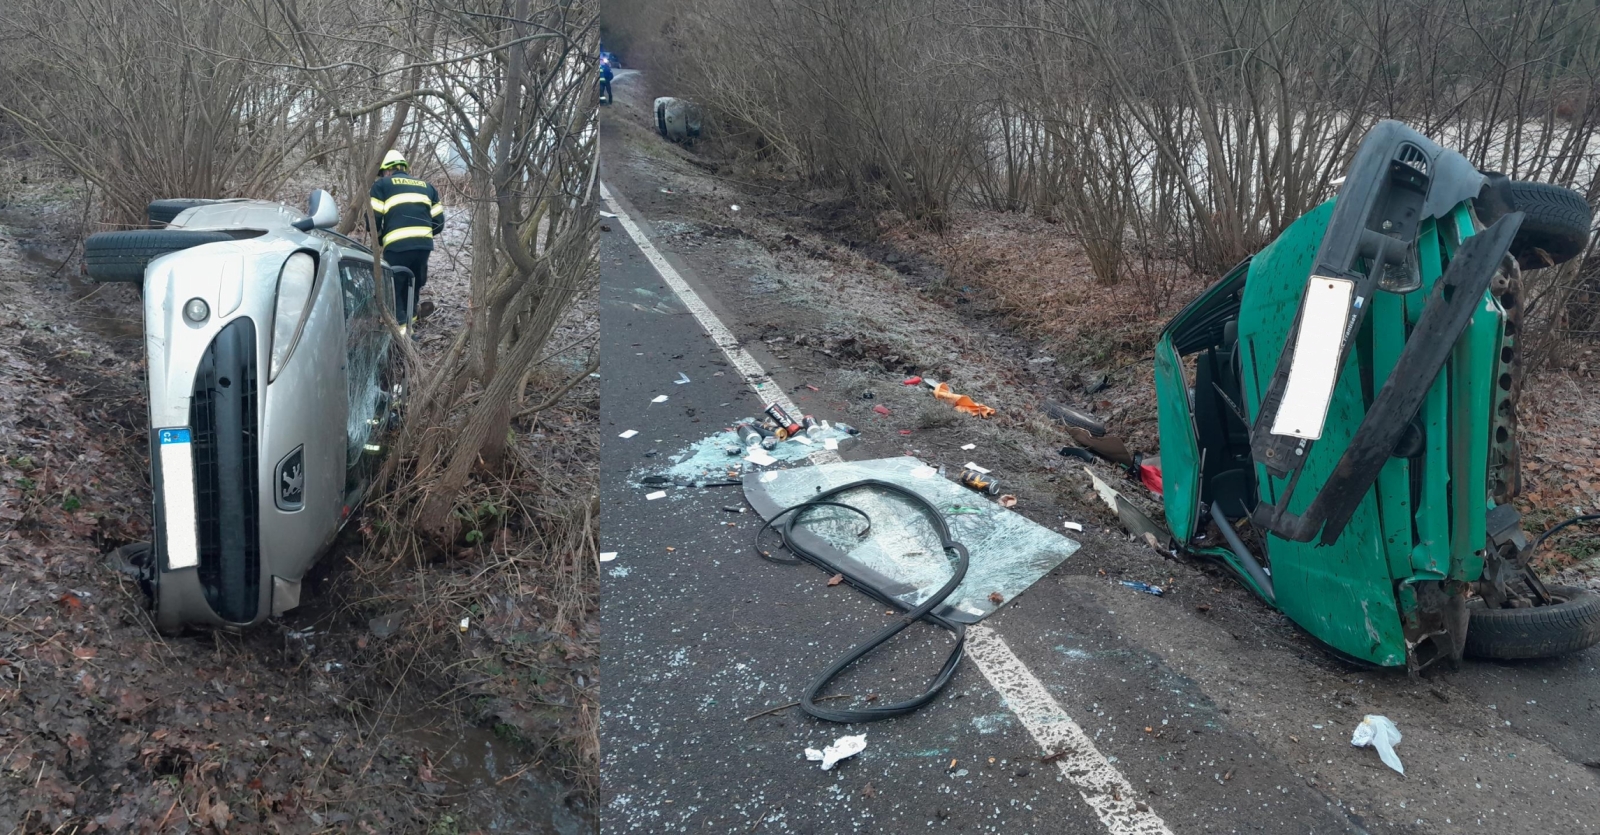 081-Dopravní nehoda dvou osobních aut mezi obcemi Černíkovice a Vatěkov na Benešovsku.jpg